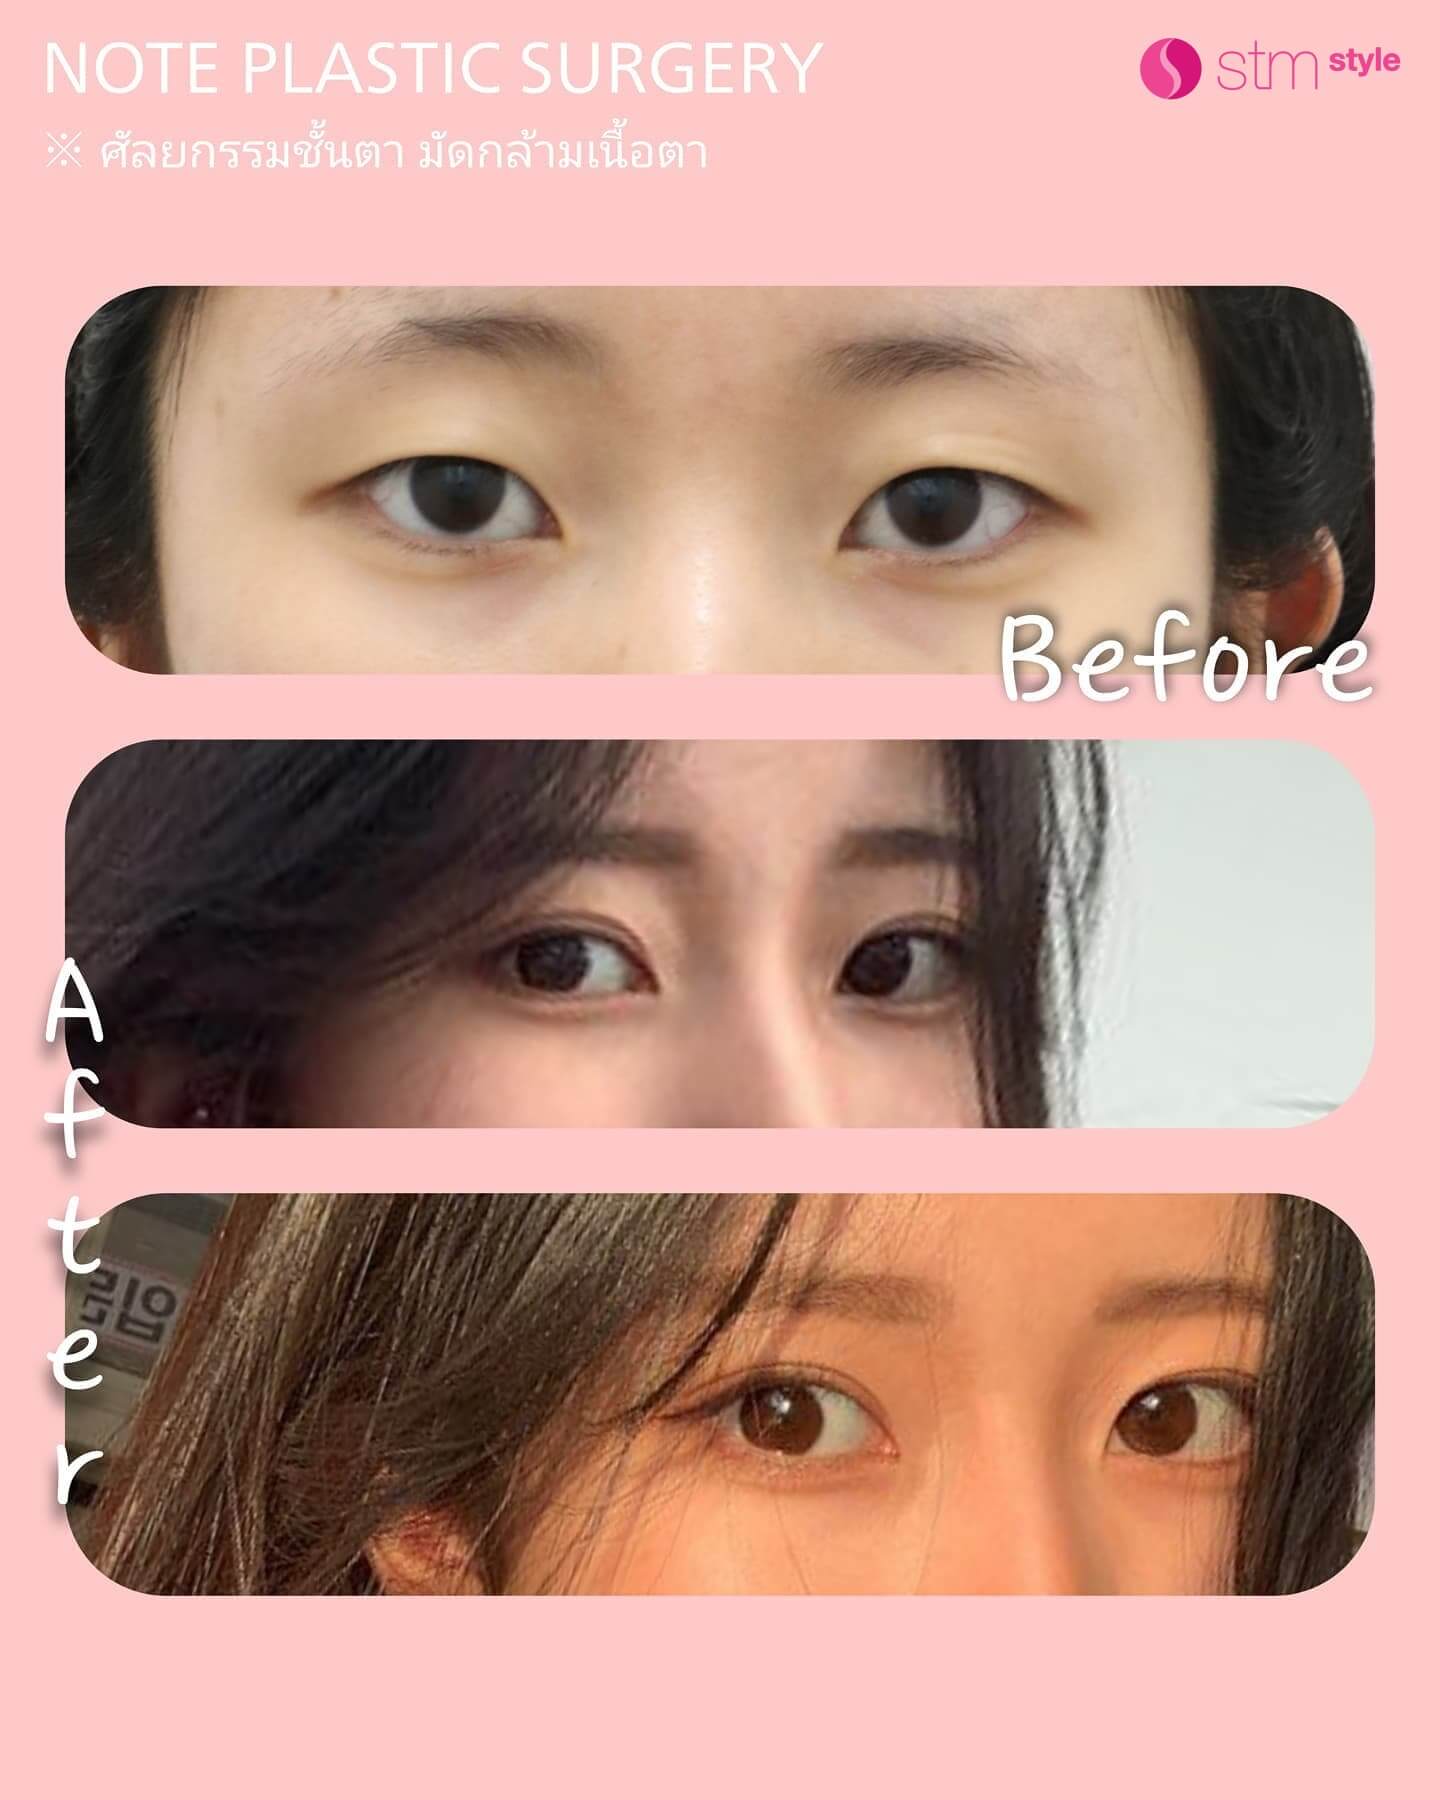 กรีดชั้นตาเปิดหางตาบนและล่าง รีวิวศัลยกรรมตาเกาหลี โรงพยาบาลศัลยกรรมเกาหลี STMstyle โรงพยาบาลบาลNOTE มัดกล้ามเนื้อตา ศัลยกรรมตาสองชั้น